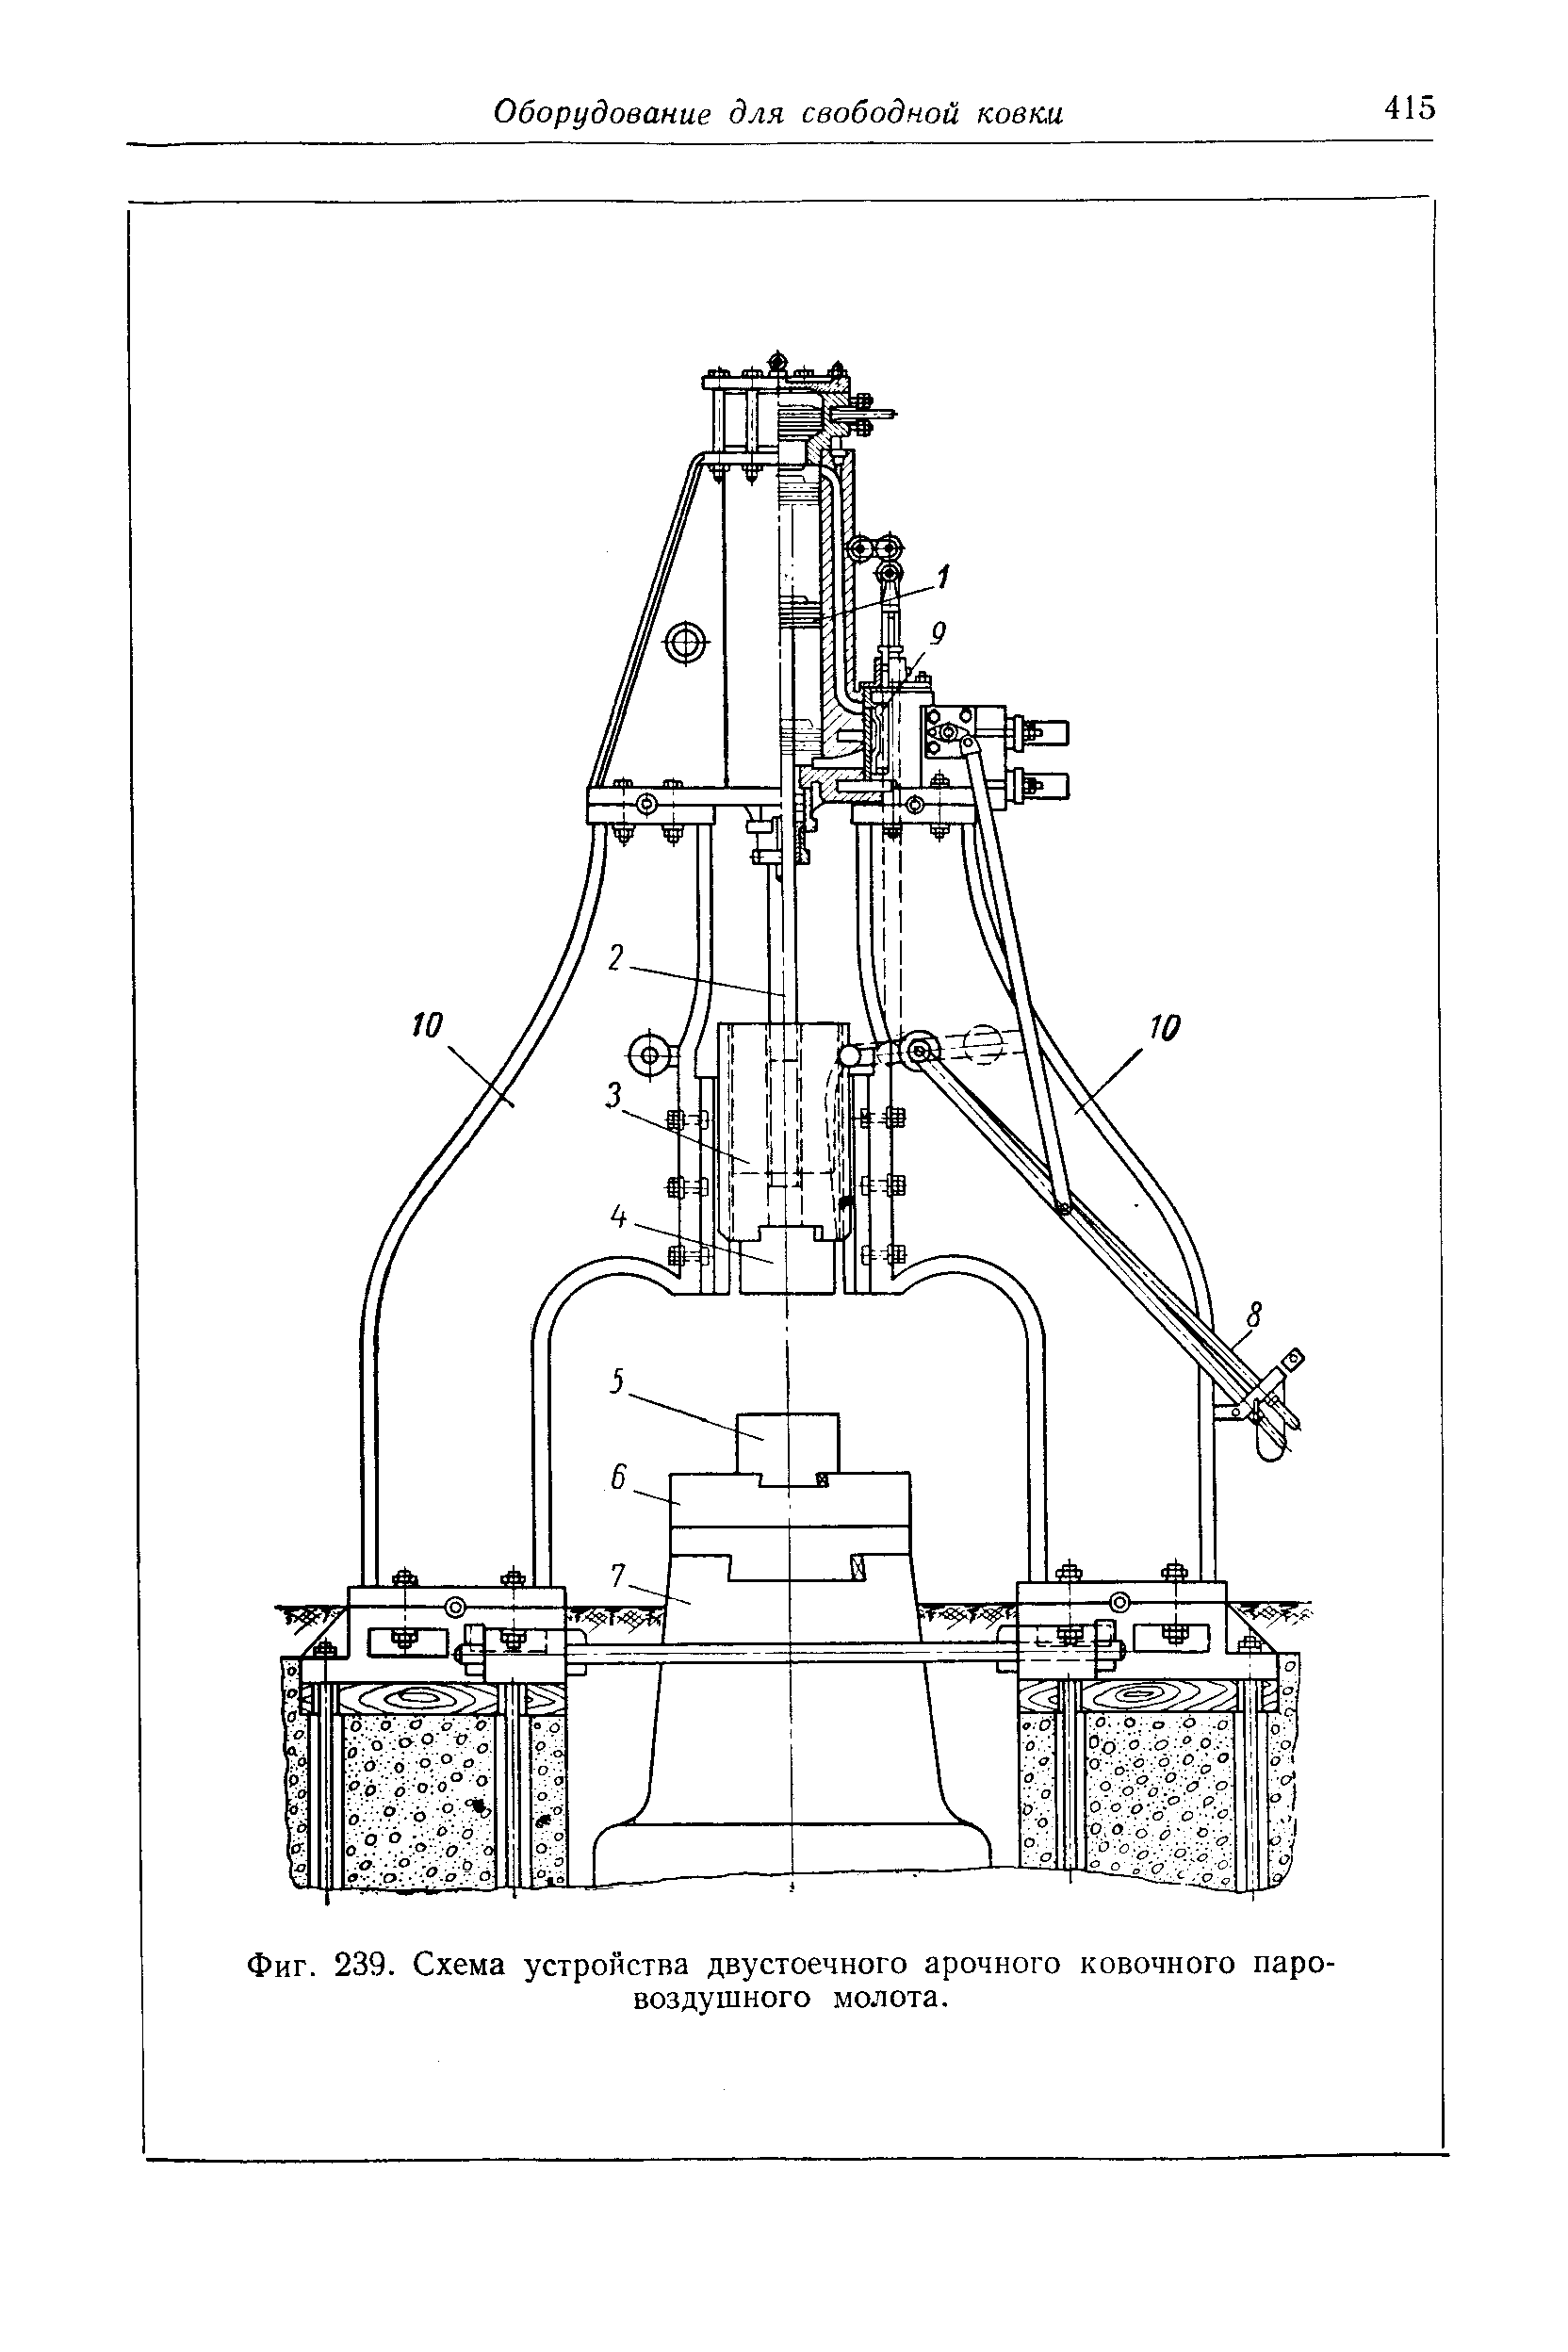 Кинематическая схема паровоздушного молота арочного типа